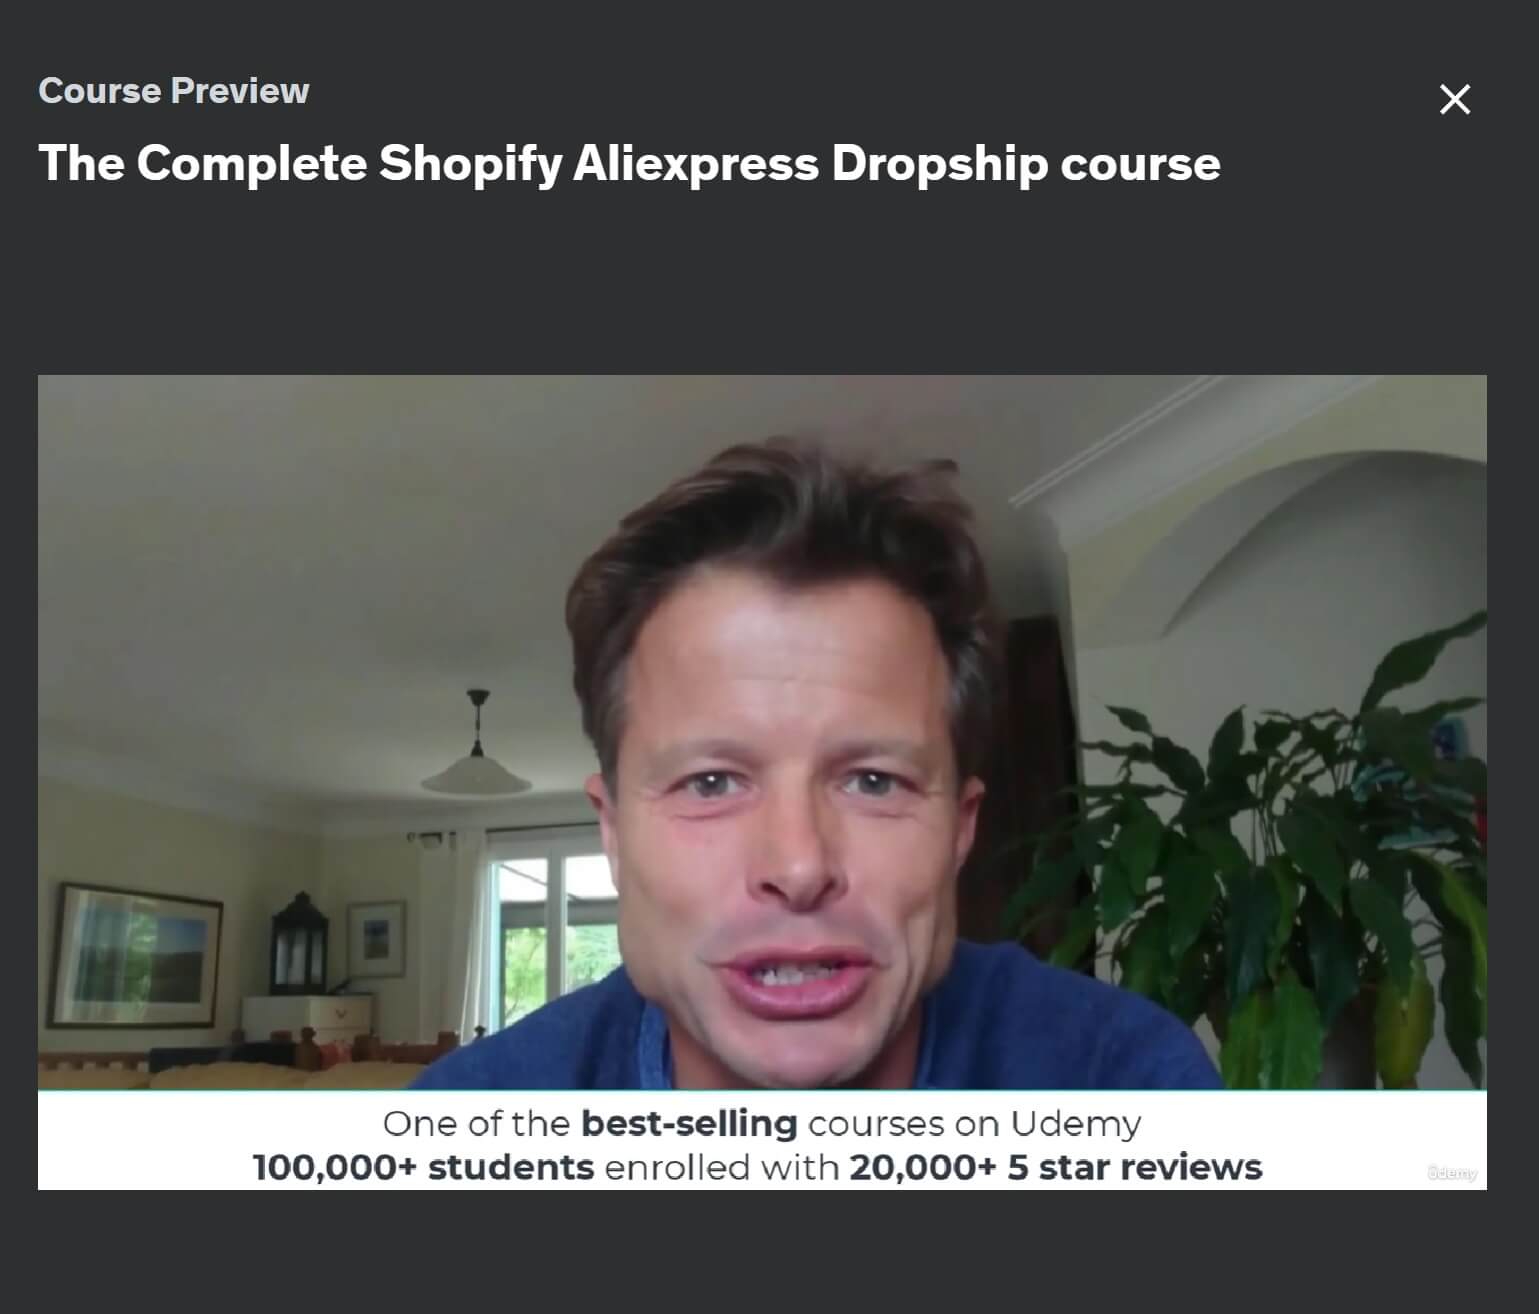 L'aperçu complet du cours Shopify Aliexpress Dropship